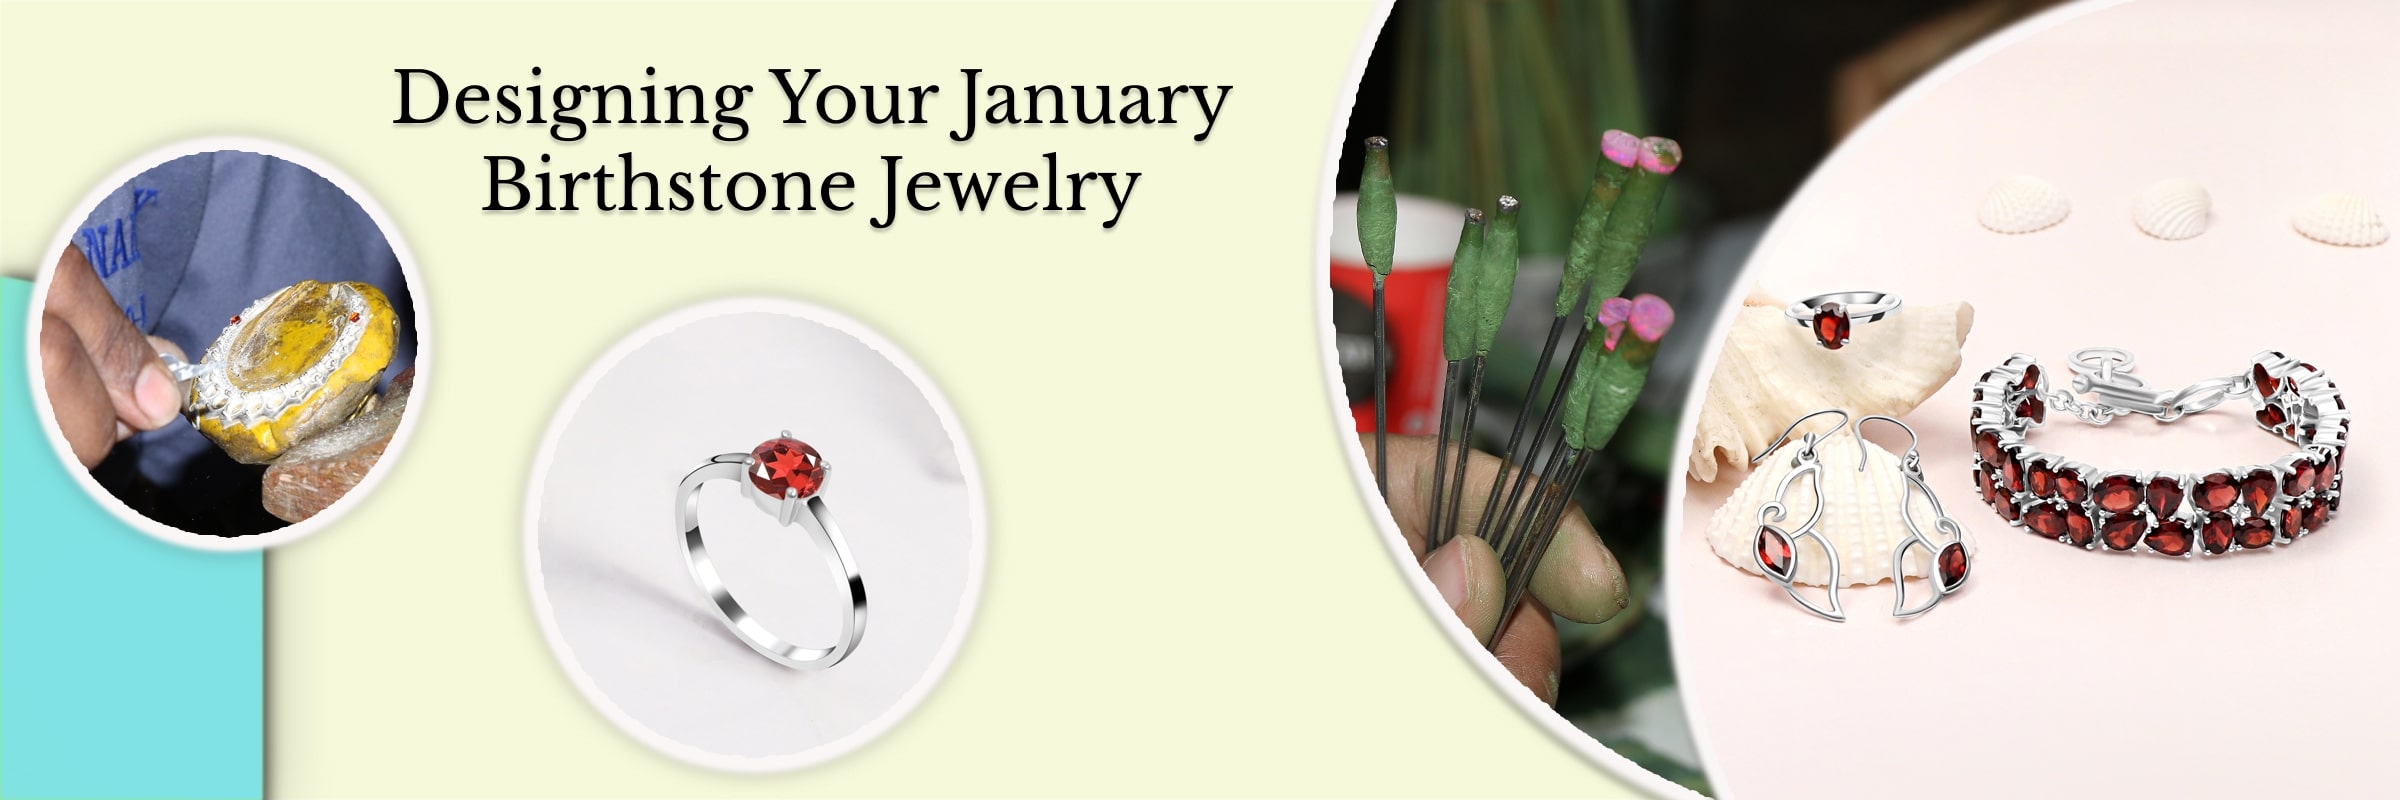 How to Customize January Birthstone Jewelry